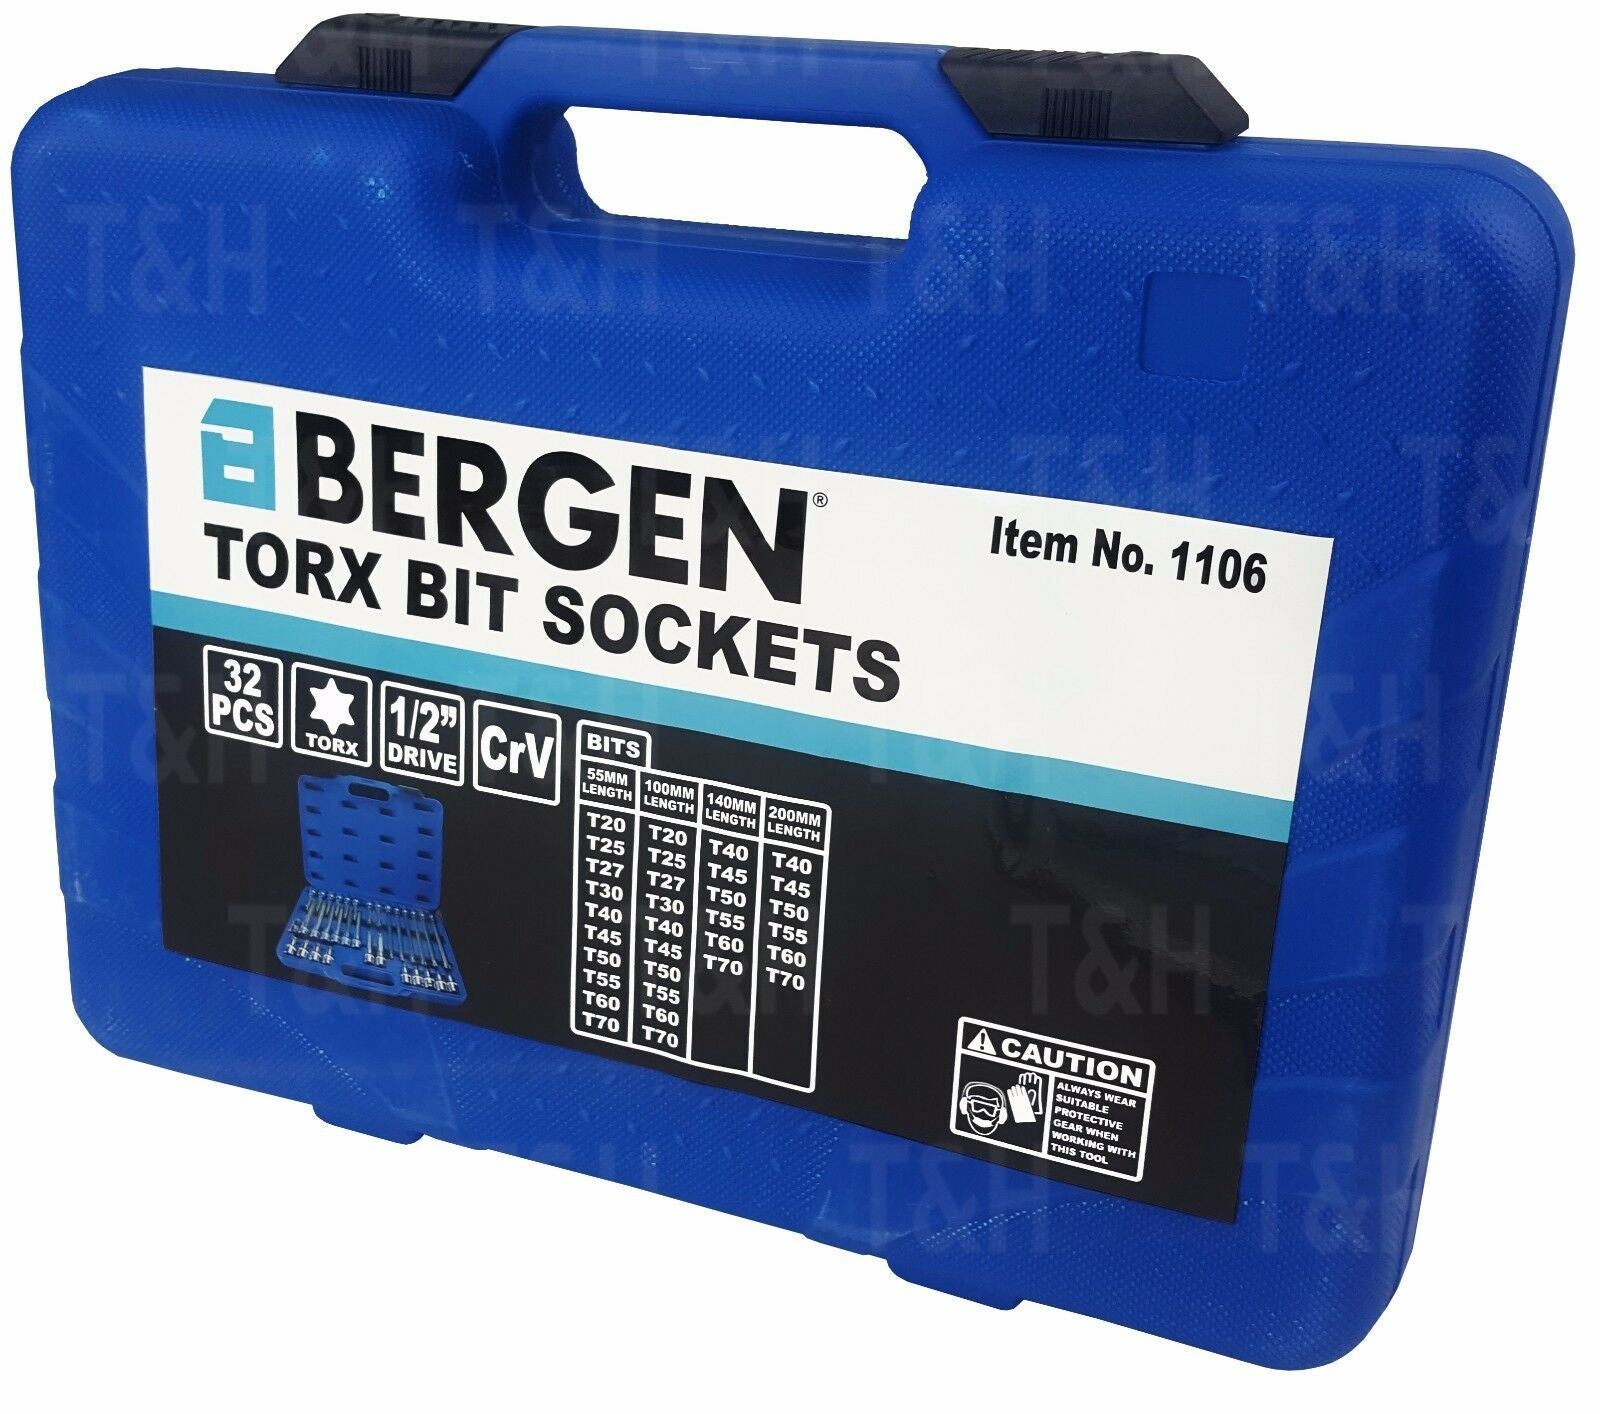 BERGEN 32PCS 1/2" DRIVE TORX BIT SOCKETS T20 - T70